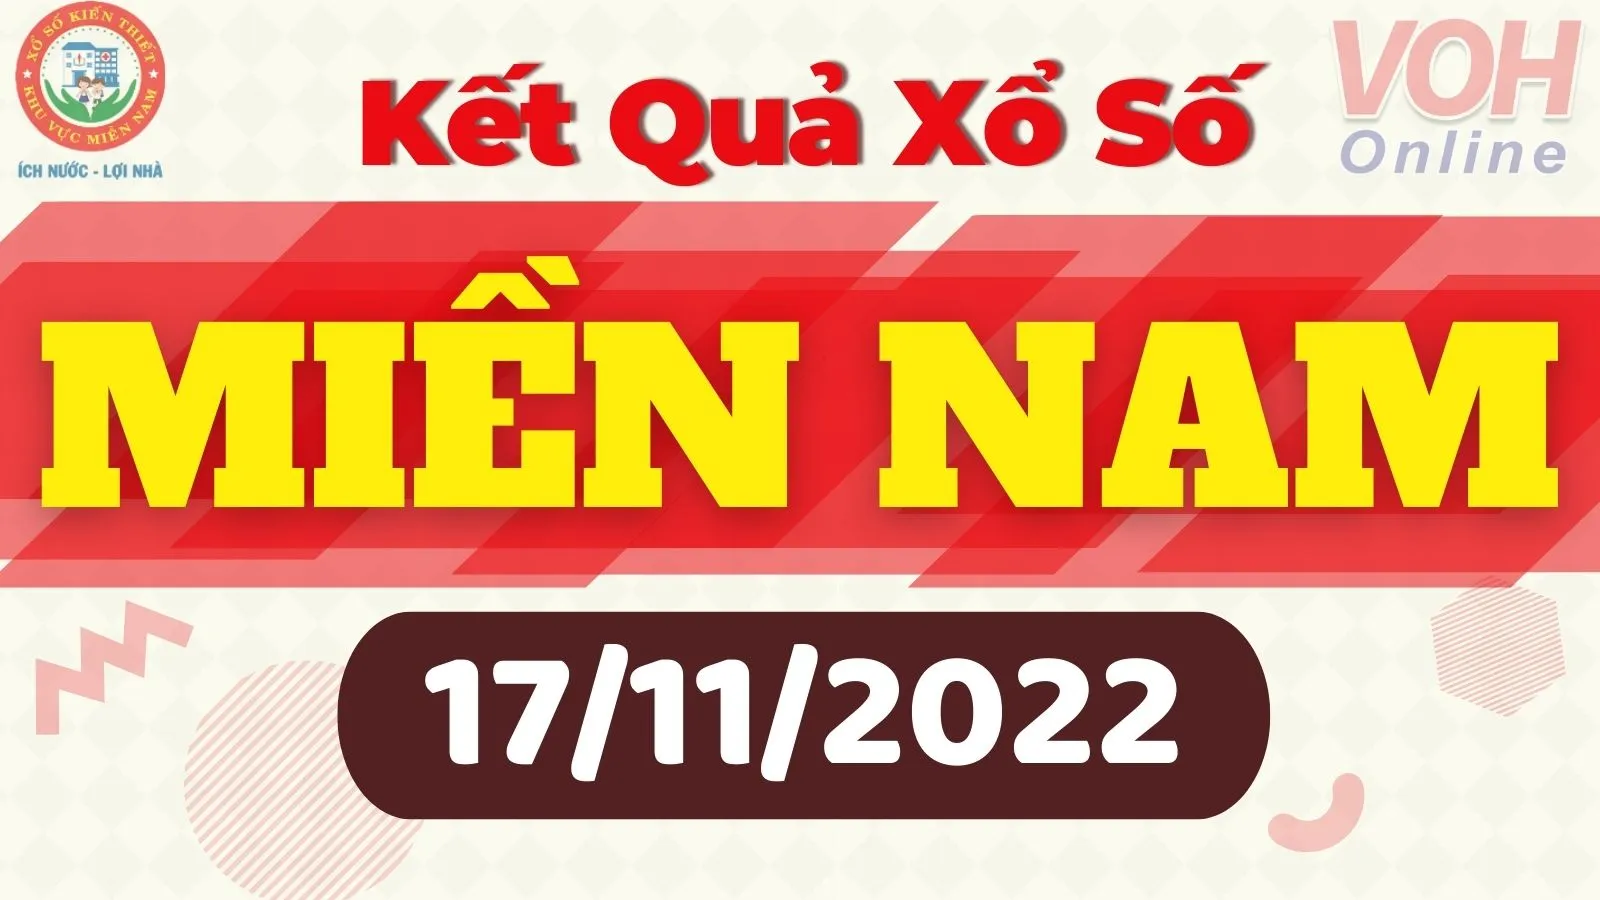 Xổ số miền Nam hôm nay - XSMN 17/11 - SXMN 17/11/2022 - Kết quả xổ số hôm nay ngày 17 tháng 11